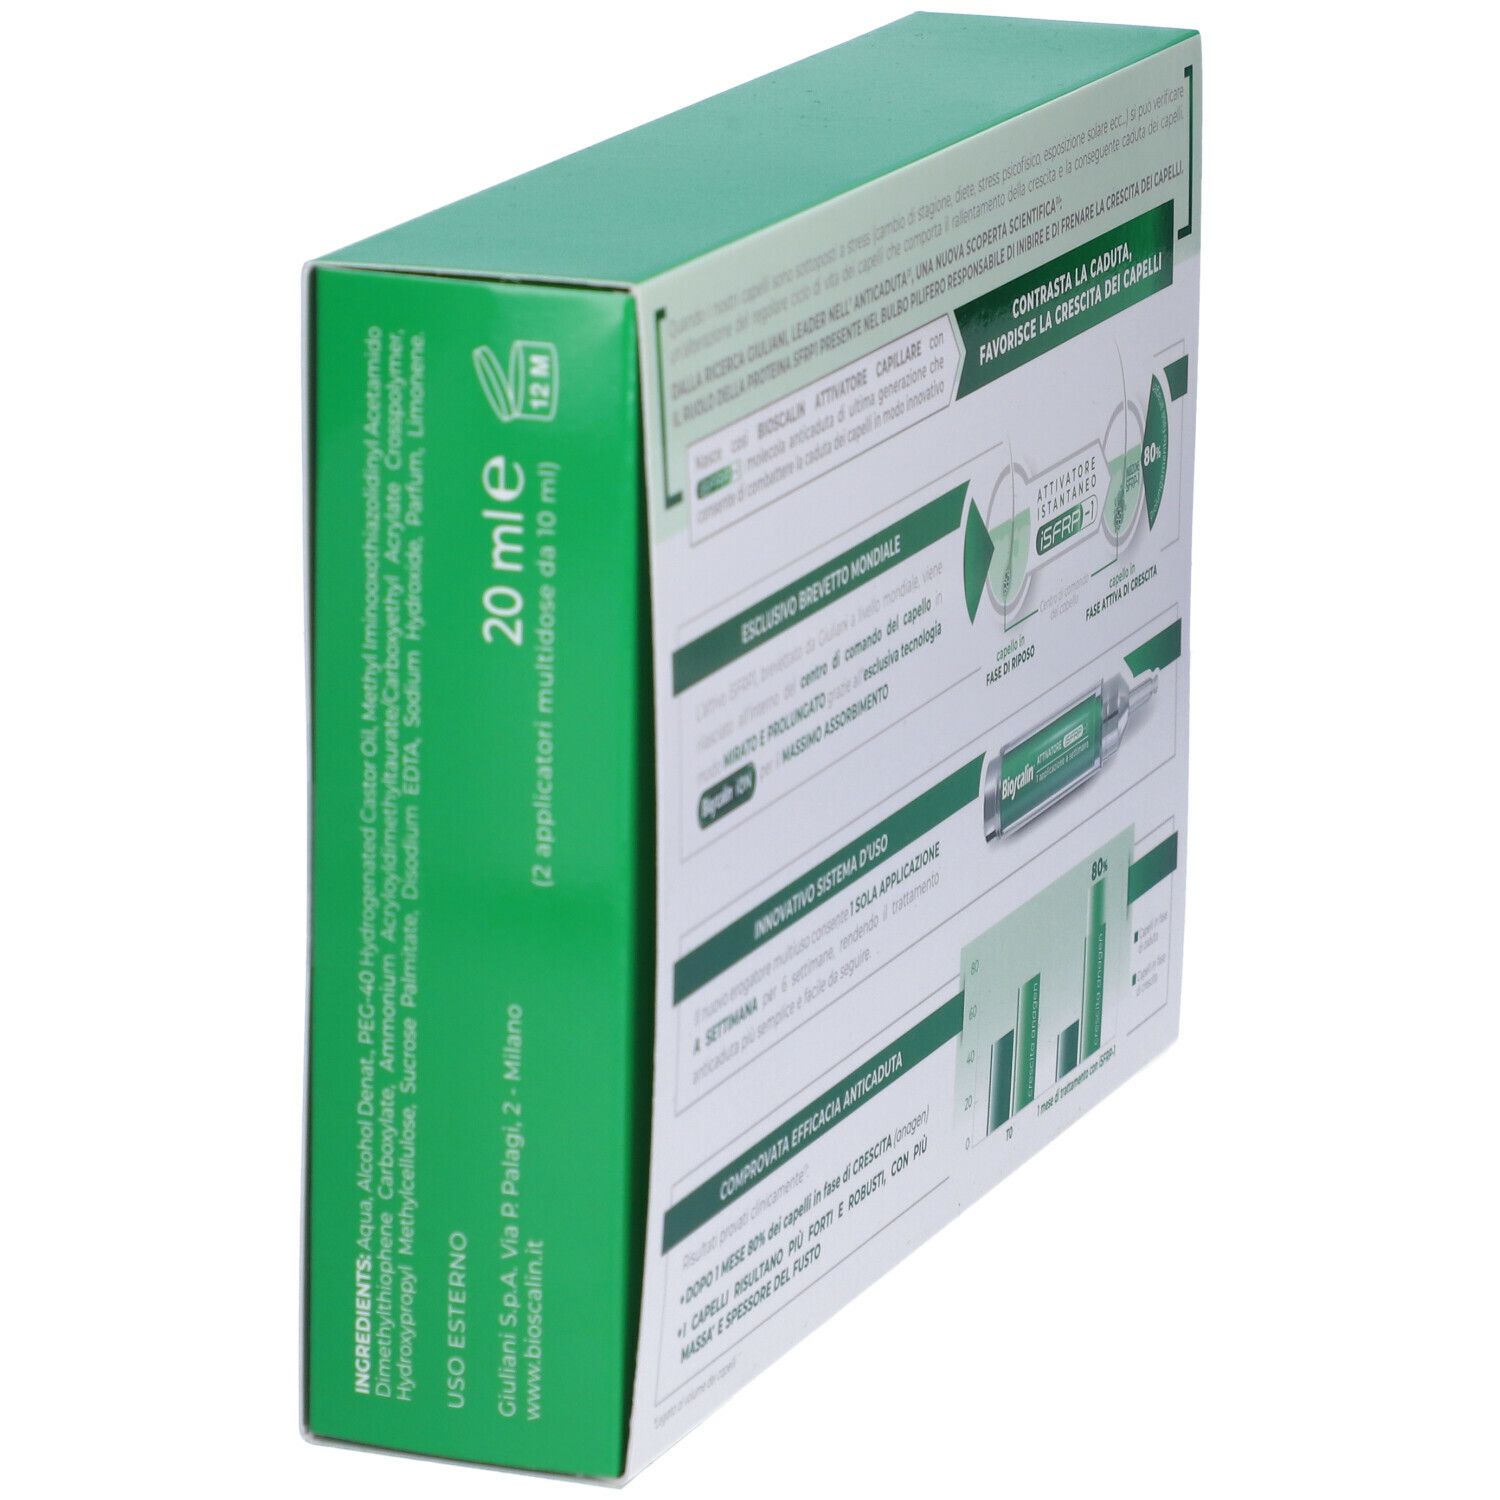 Bioscalin® Attivatore Capillare iSFRP-1